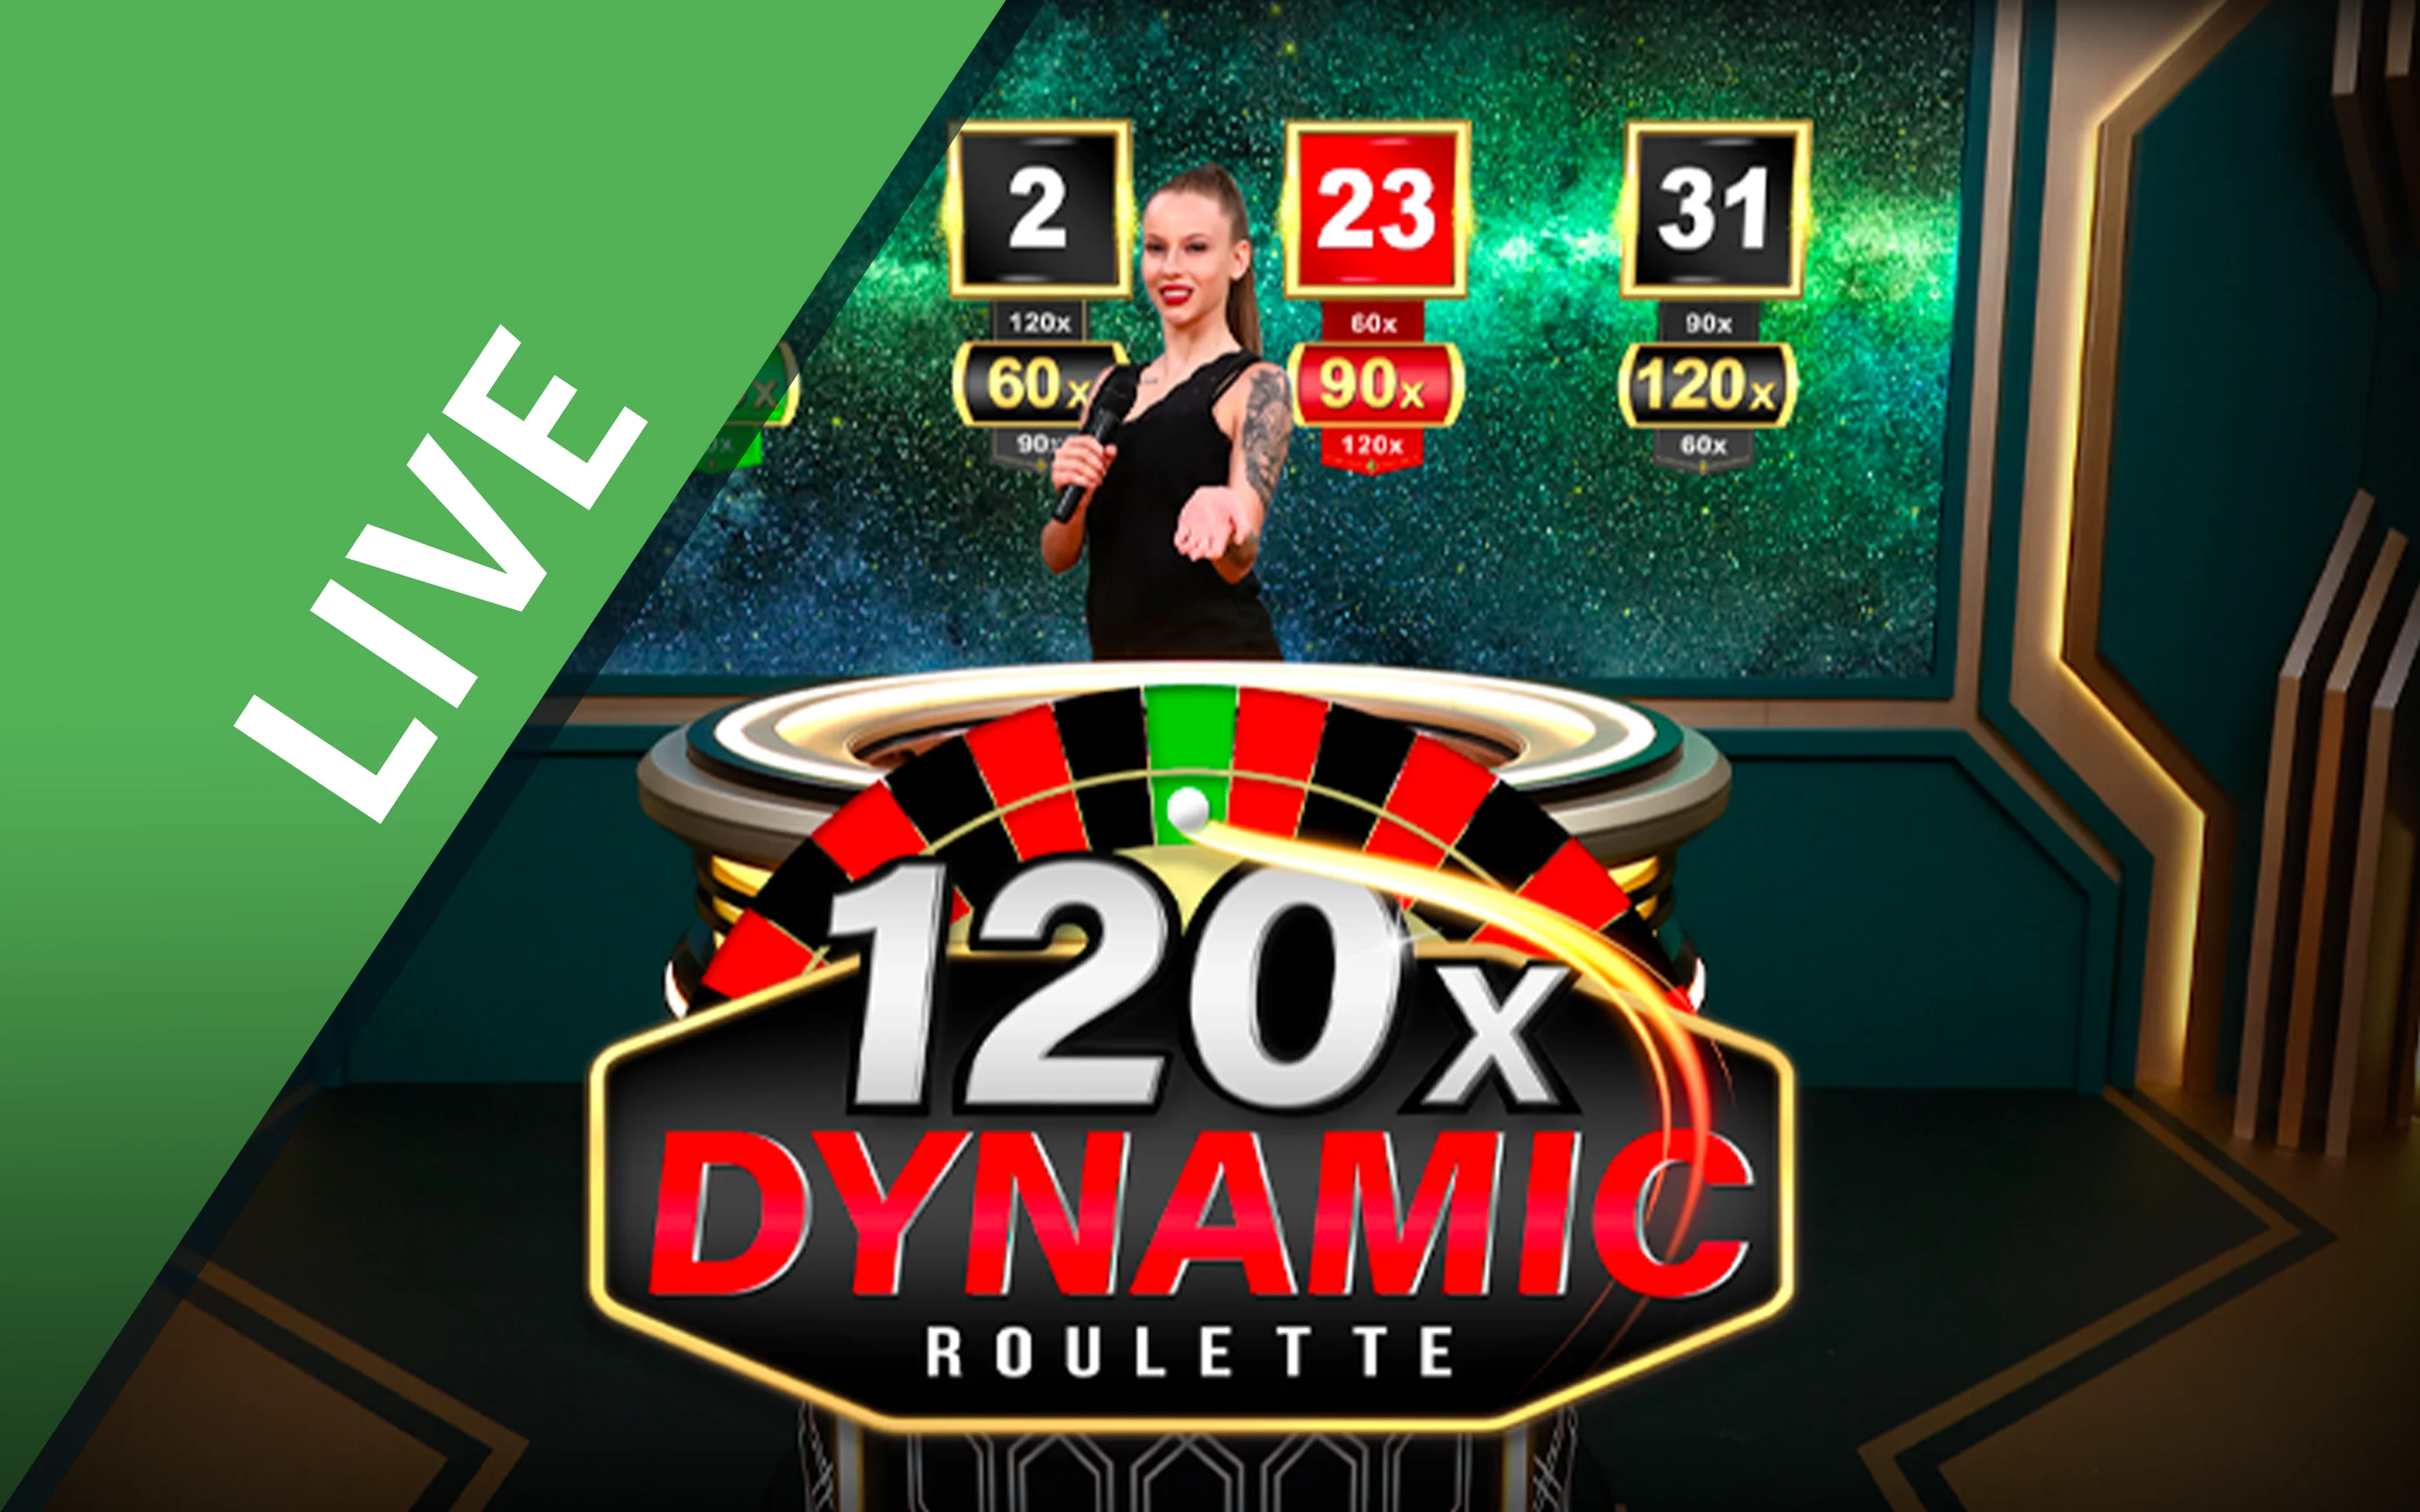 เล่น Dynamic Roulette 120x บนคาสิโนออนไลน์ Starcasino.be